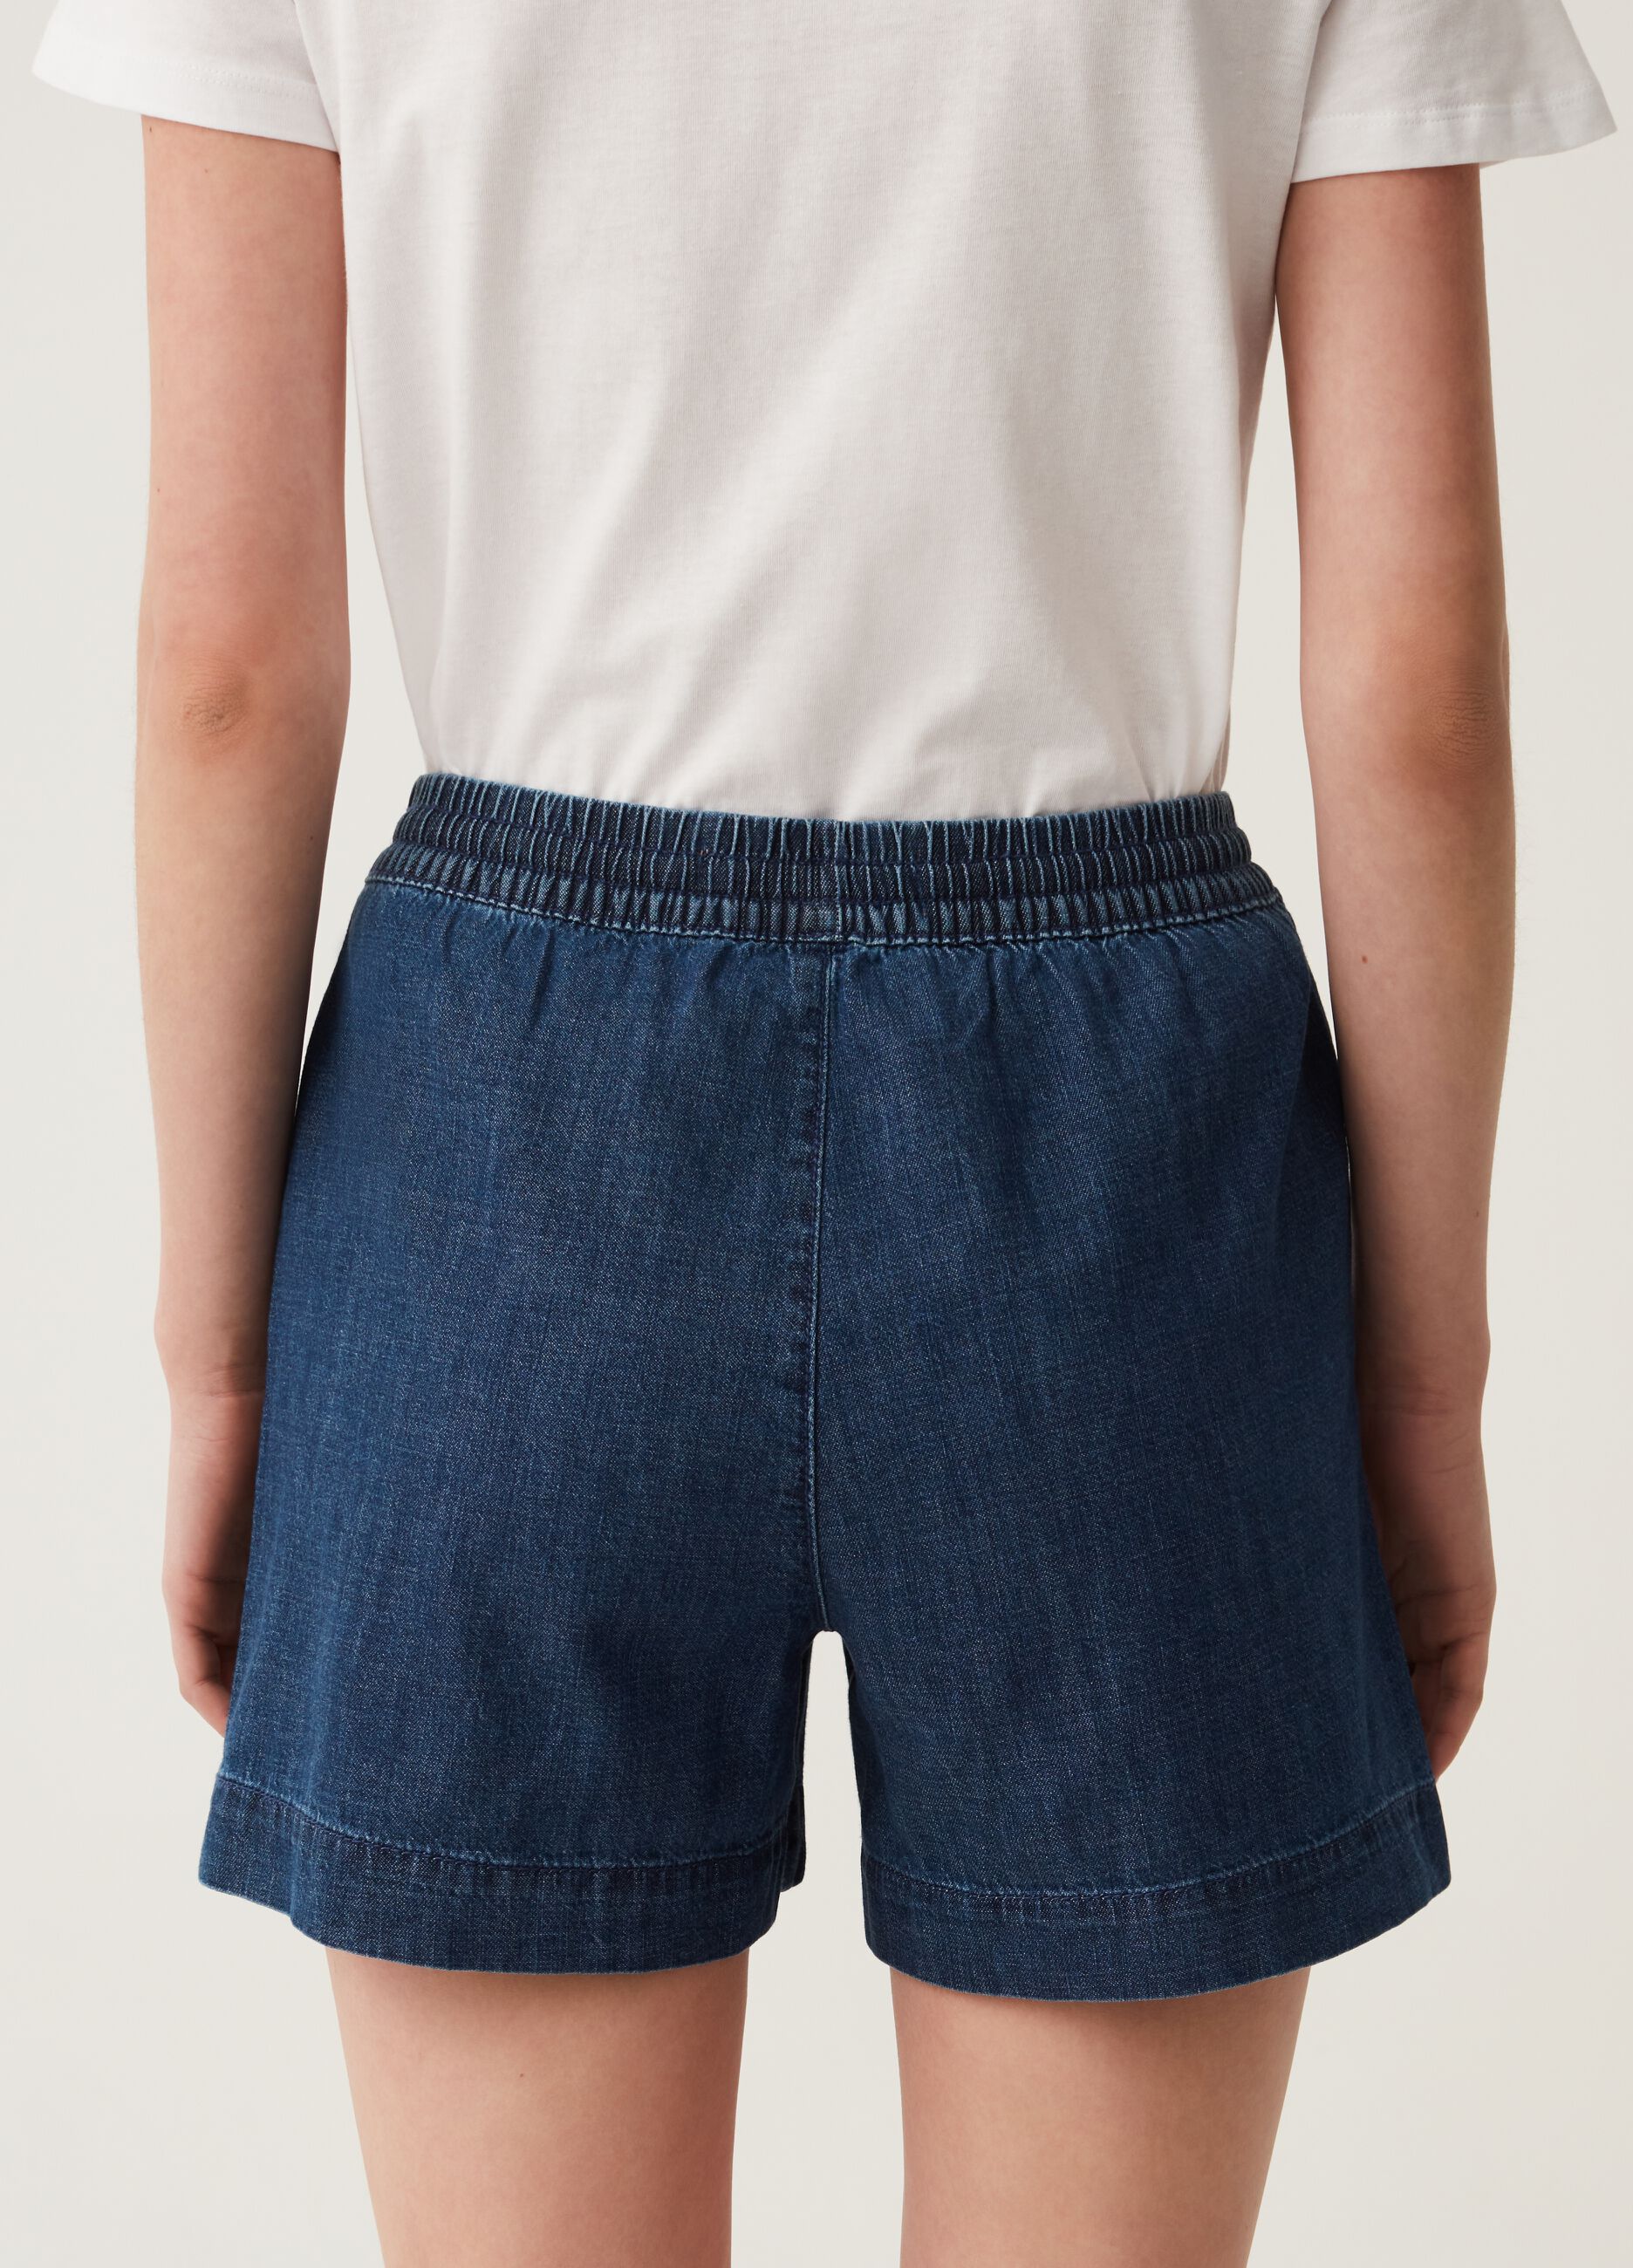 Denim shorts with drawstring